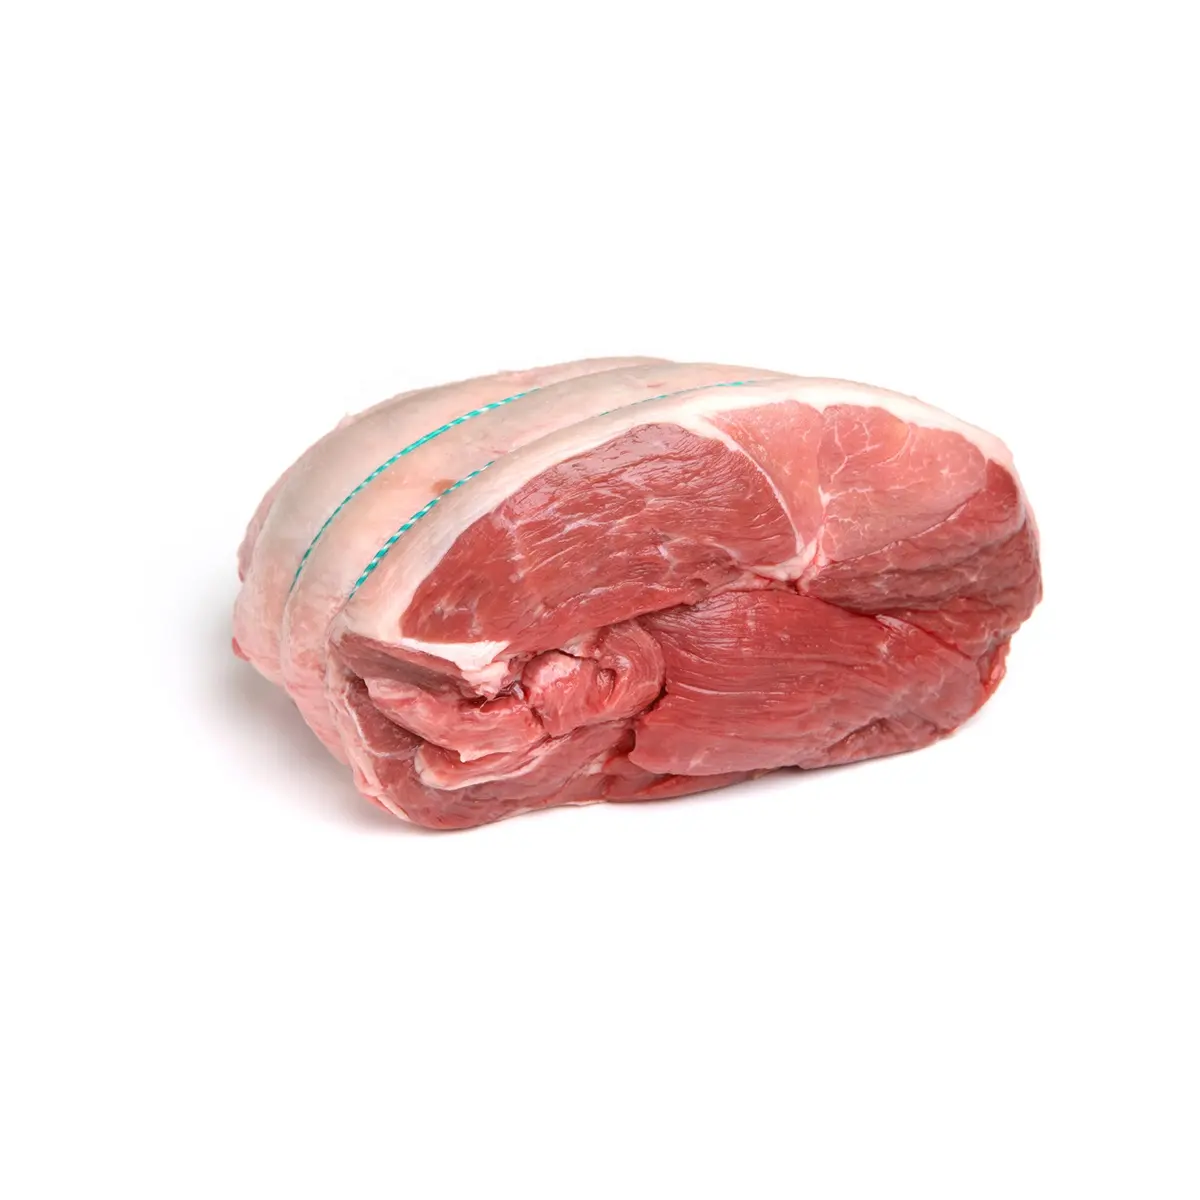 Nhà máy cung cấp giá bán buôn chất lượng hàng đầu cừu thịt Bone-in, đông lạnh có sẵn để bán